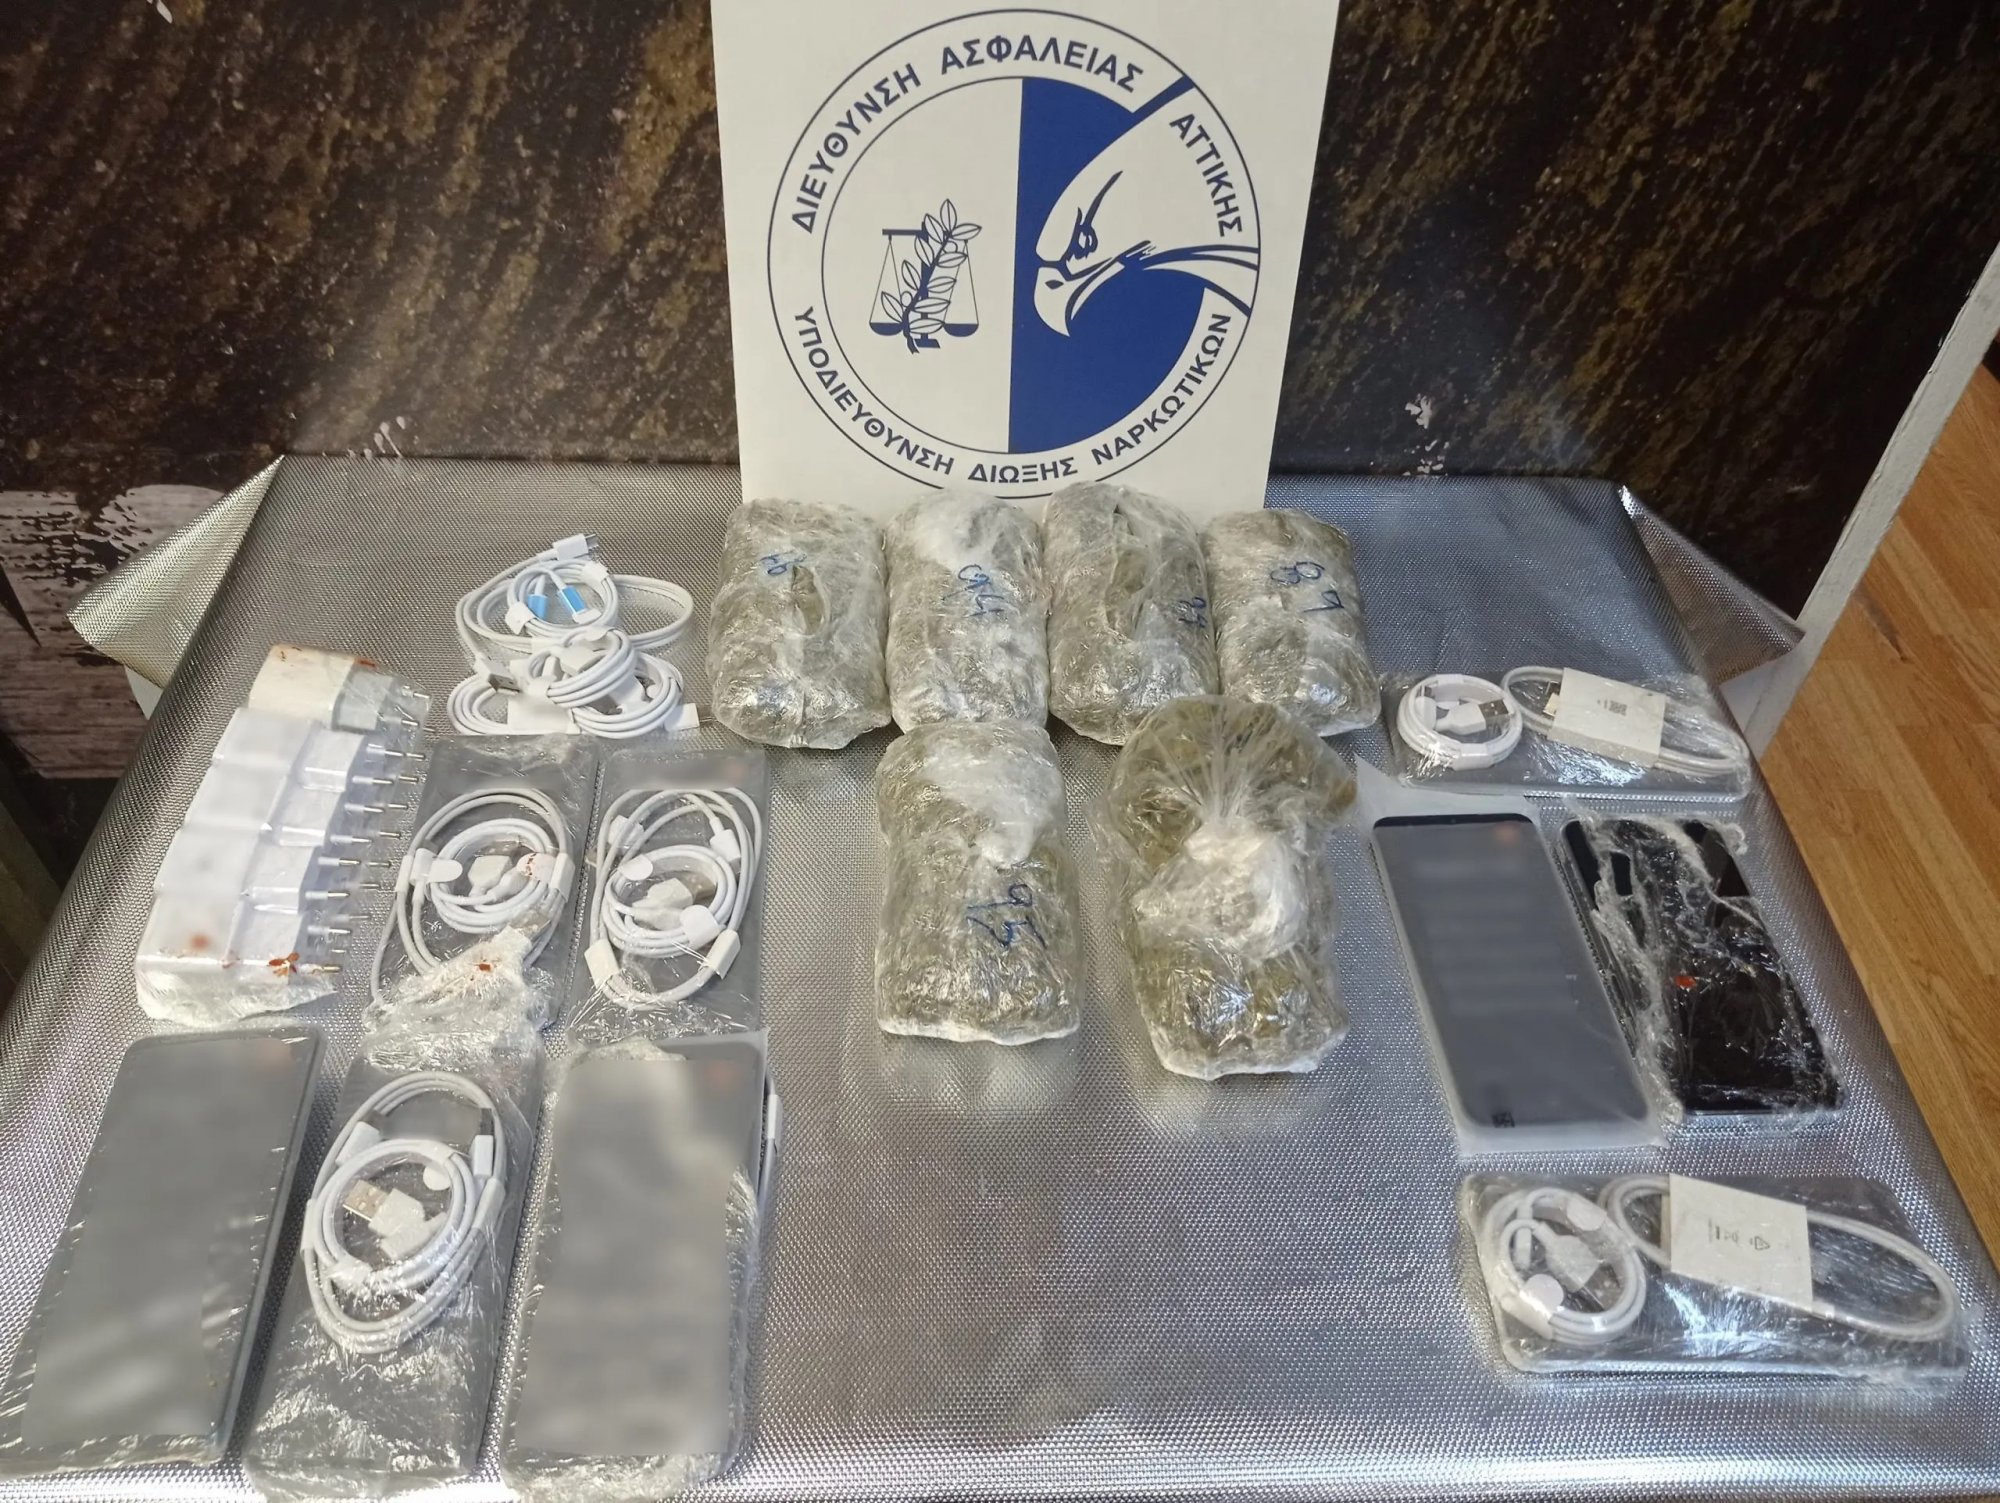 Φυλακές Κορυδαλλού: Ναρκωτικά και κινητά βρέθηκαν σε κατσαρόλα με φαγητό - Συνελήφθη σωφρονιστικός υπάλληλος